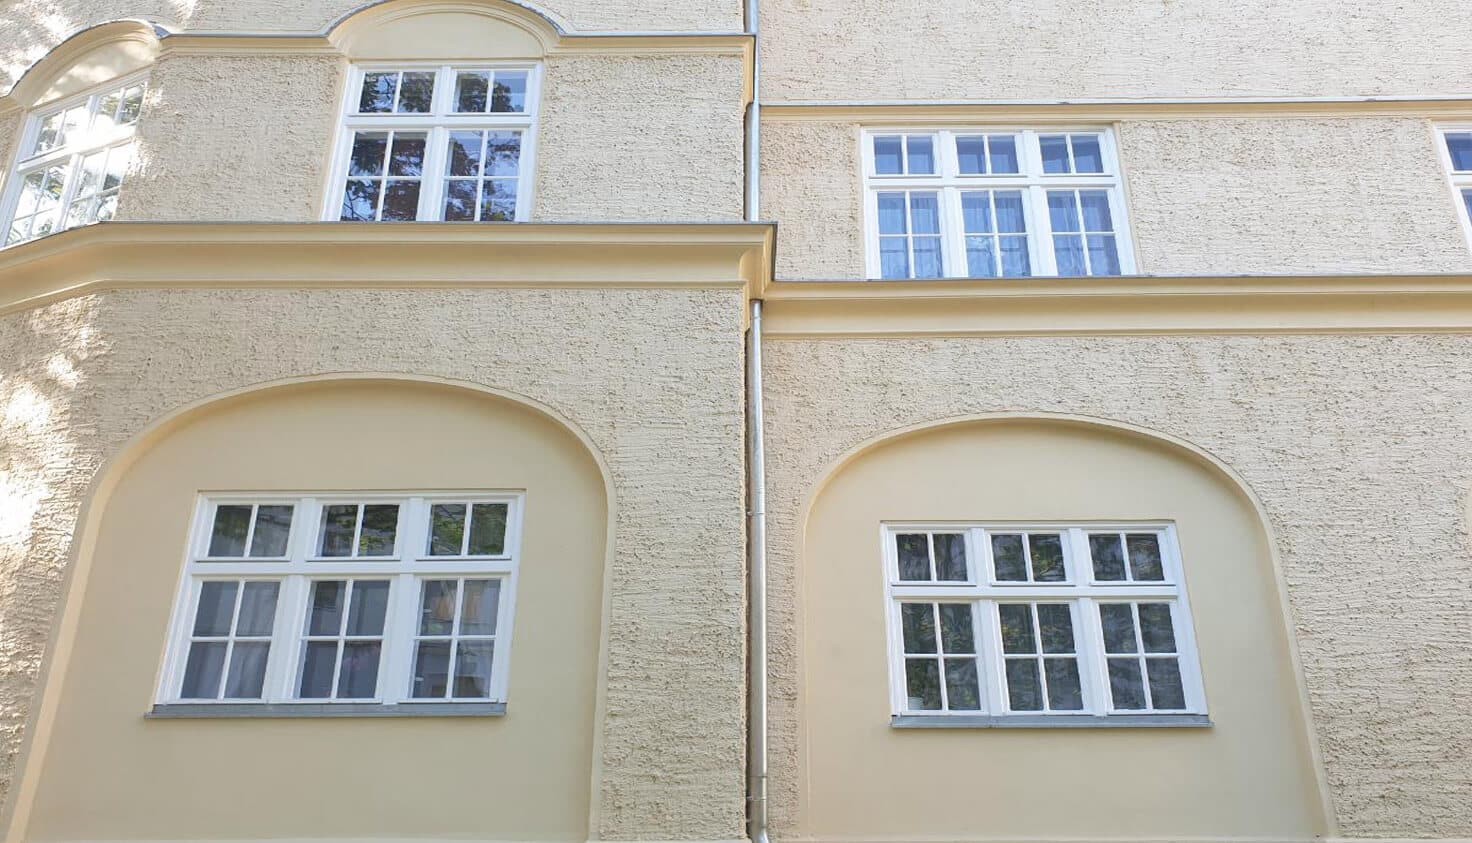 06-Sanierung-von-Altbaufenstern-referenz-malerbetrieb-kluge-berlin.jpg